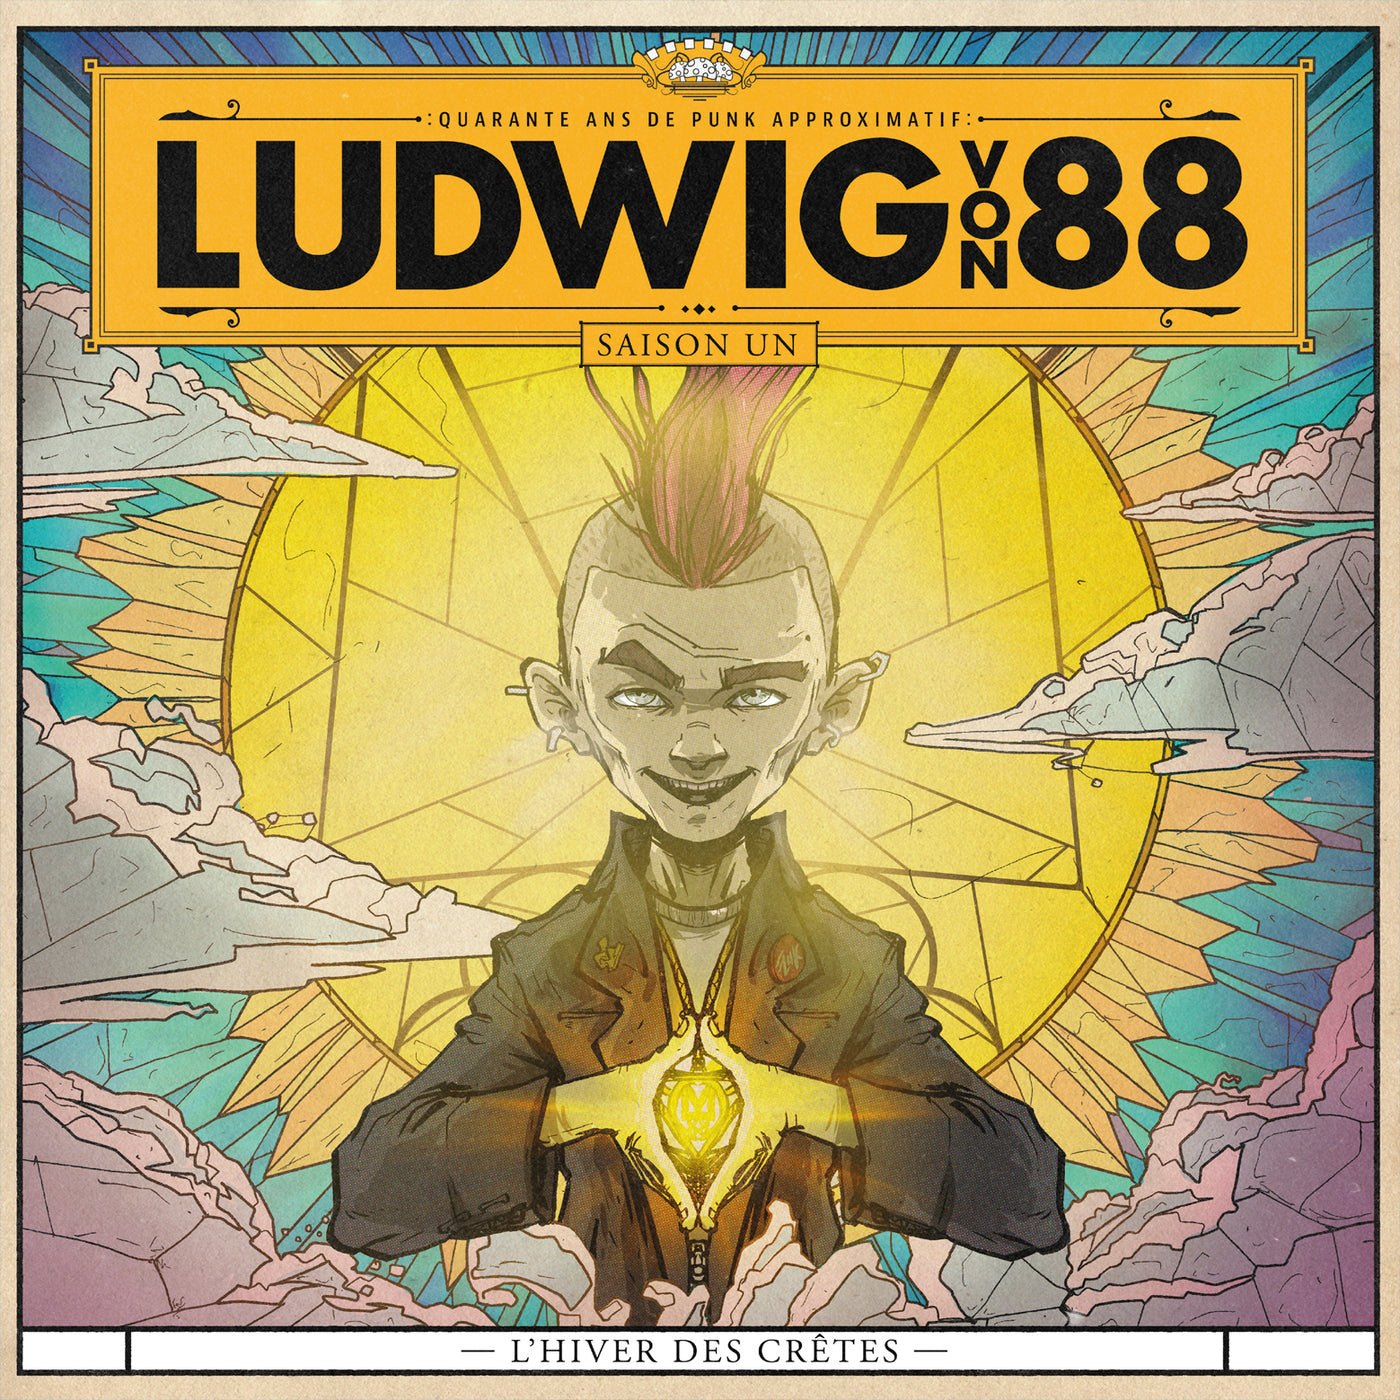 Ludwig Von 88 - L'Hiver des Crêtes